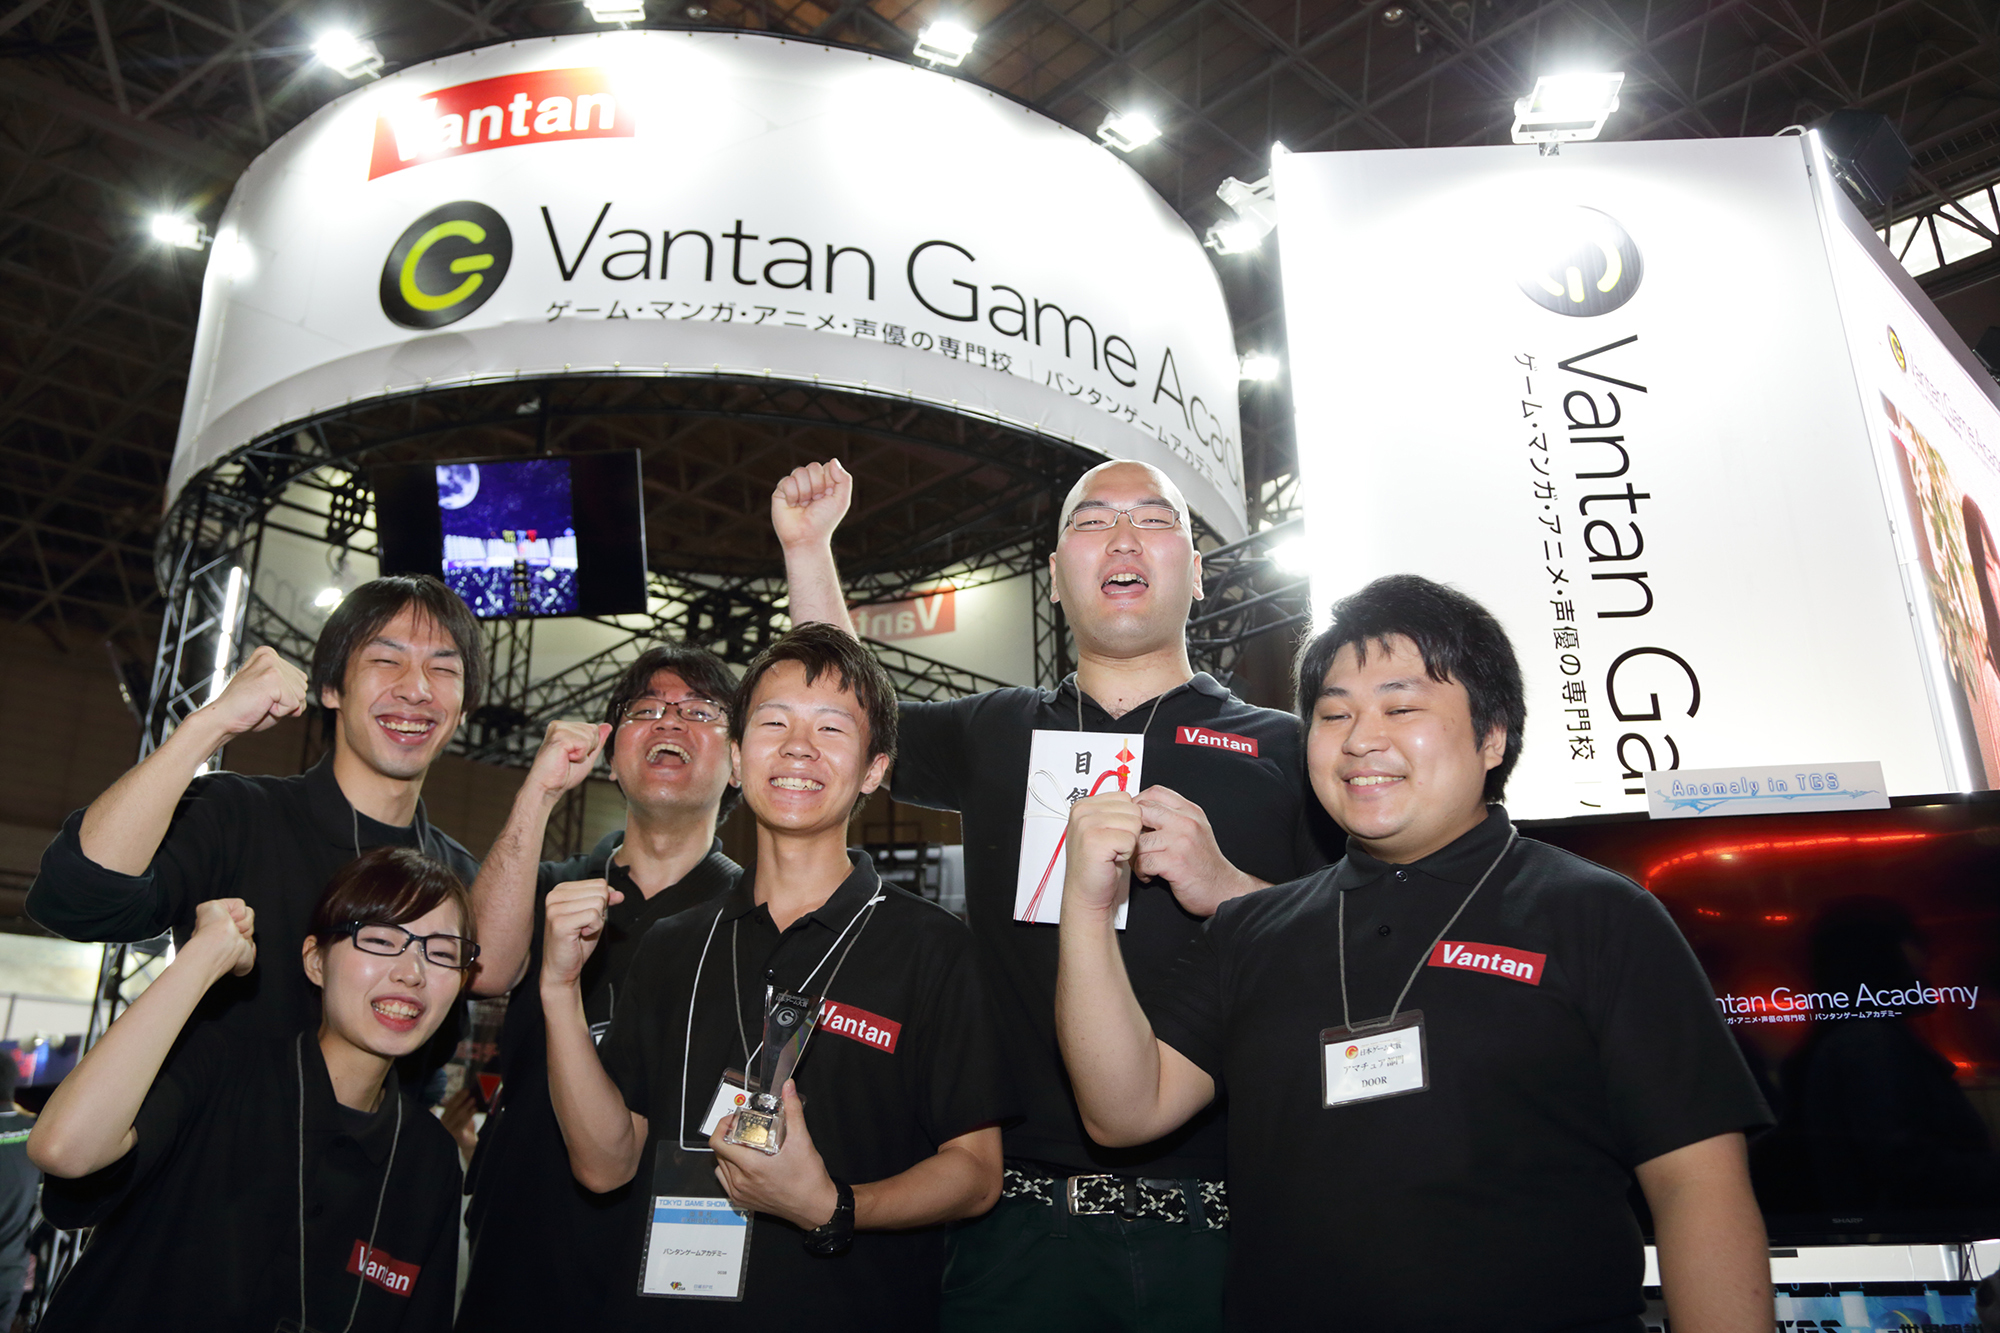 バンタンゲームアカデミー国内最大級のゲームコンテスト日本ゲーム大賞 アマチュア部門 優秀賞受賞 株式会社 バンタンのプレスリリース